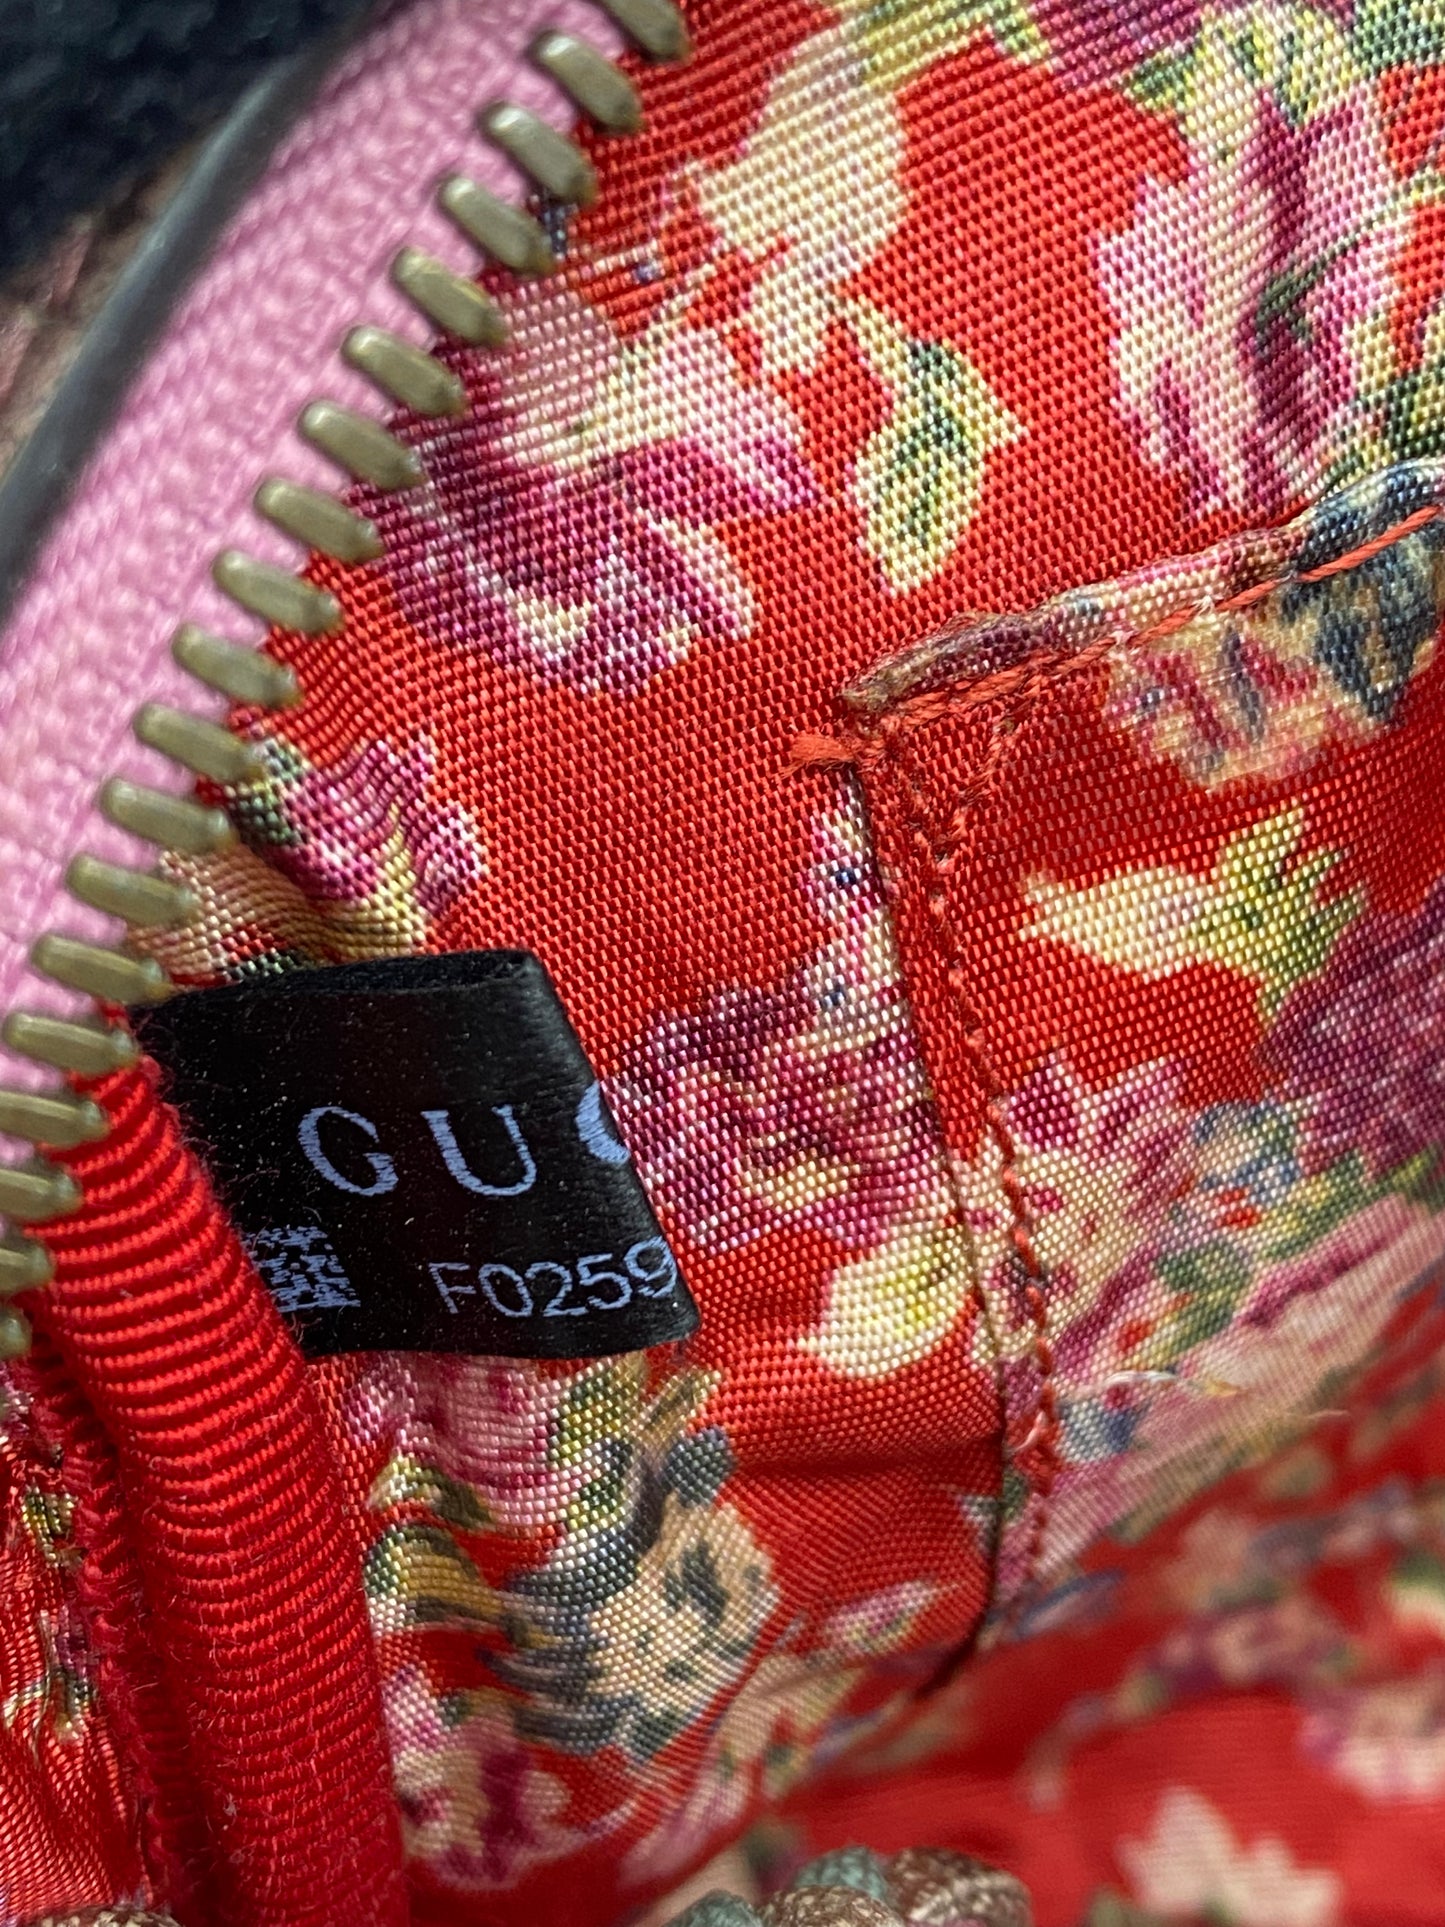 Gucci laminated bag